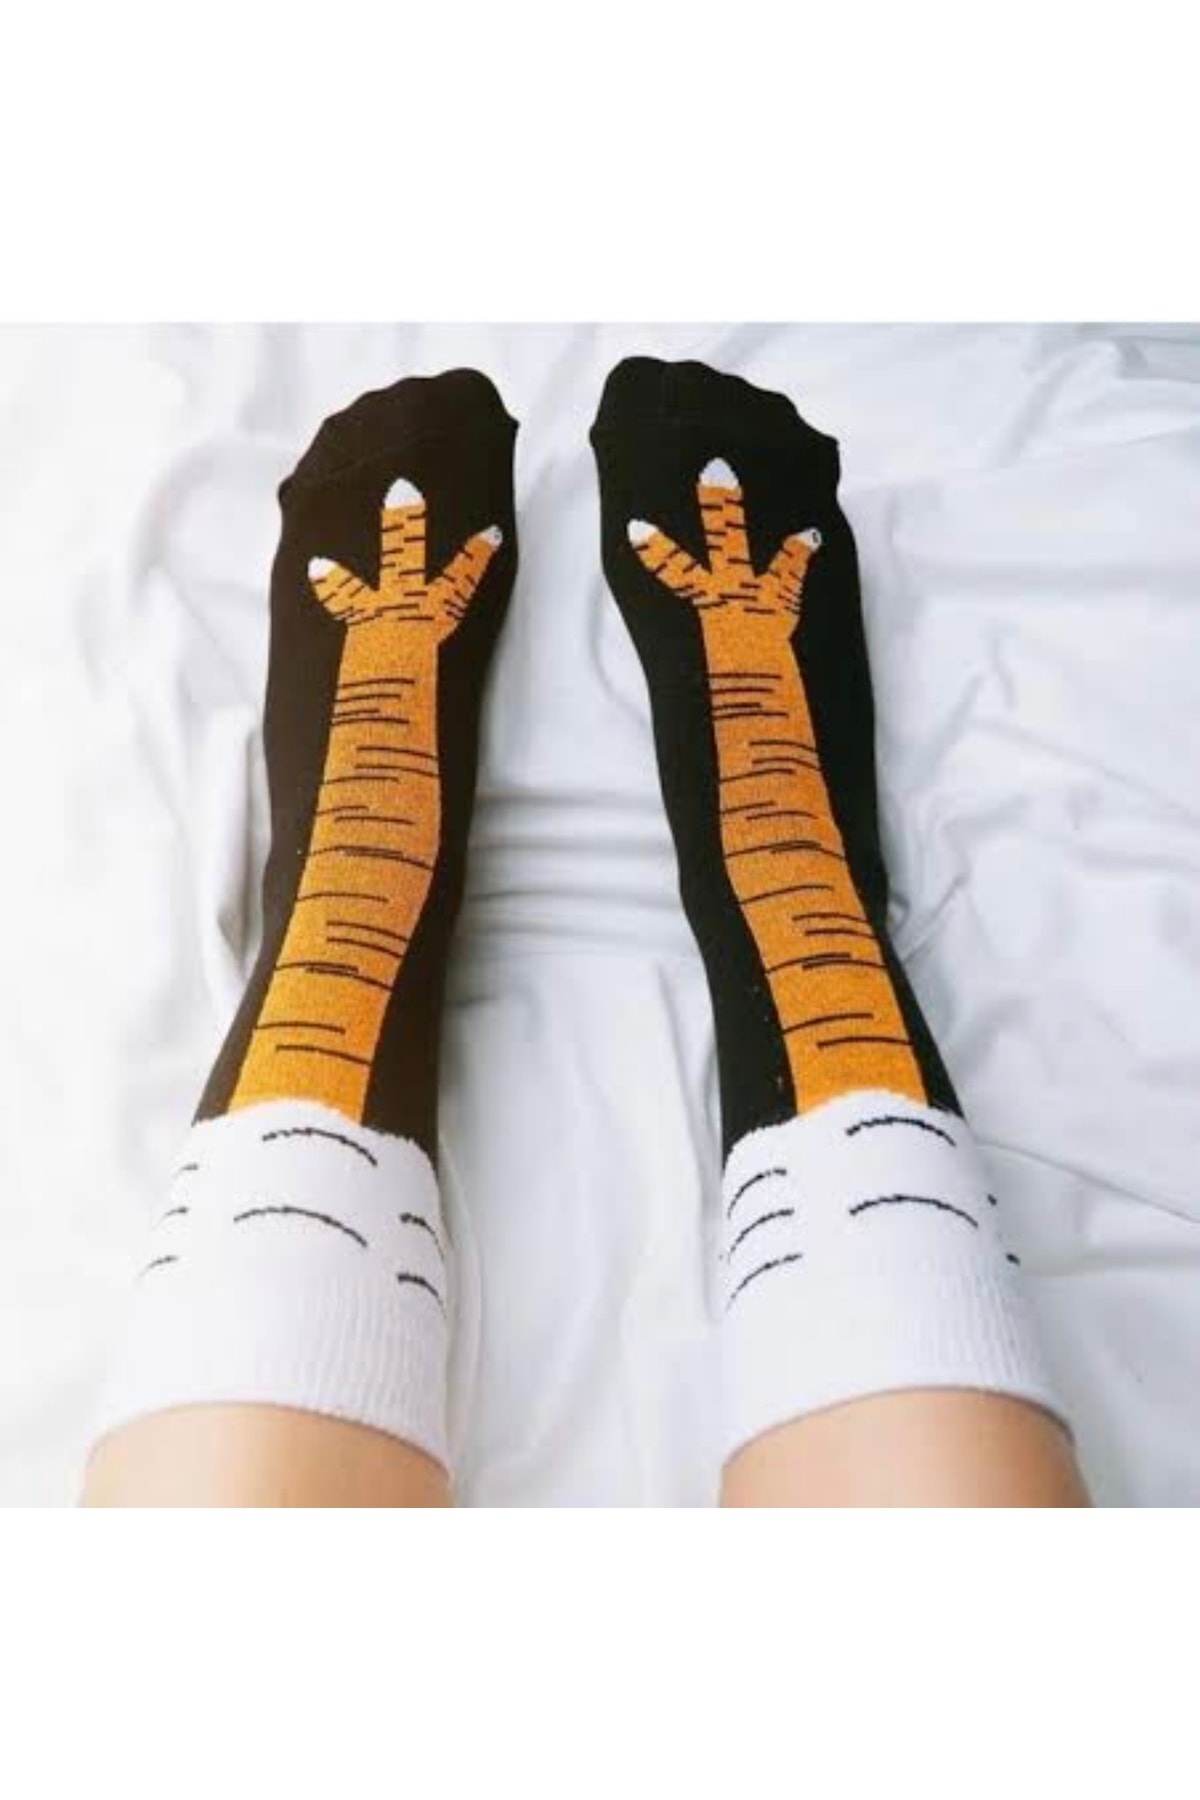 hayatonline Bad Habit Socks Kısa Tavuk Ayağı Desenli Çorap